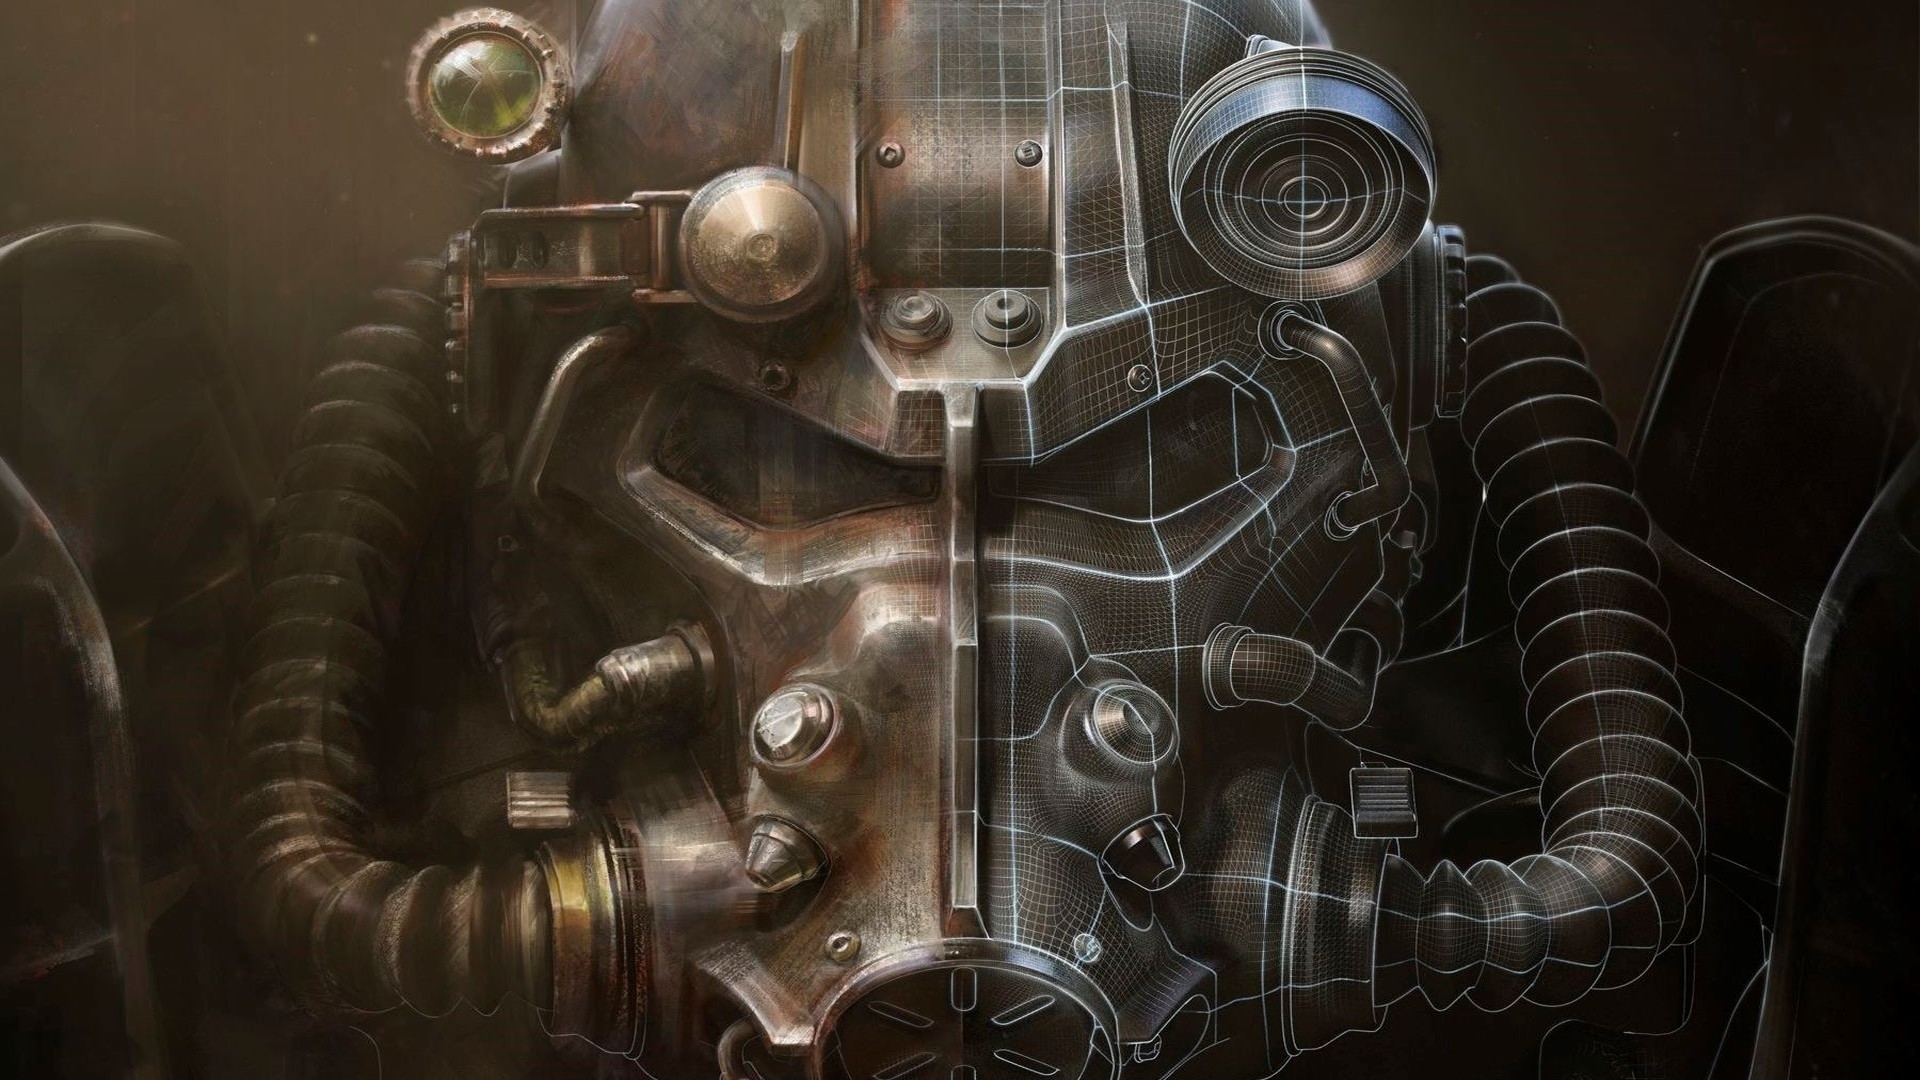 Fallout 4, bethesda game studios, bethesda softworks, power armor .